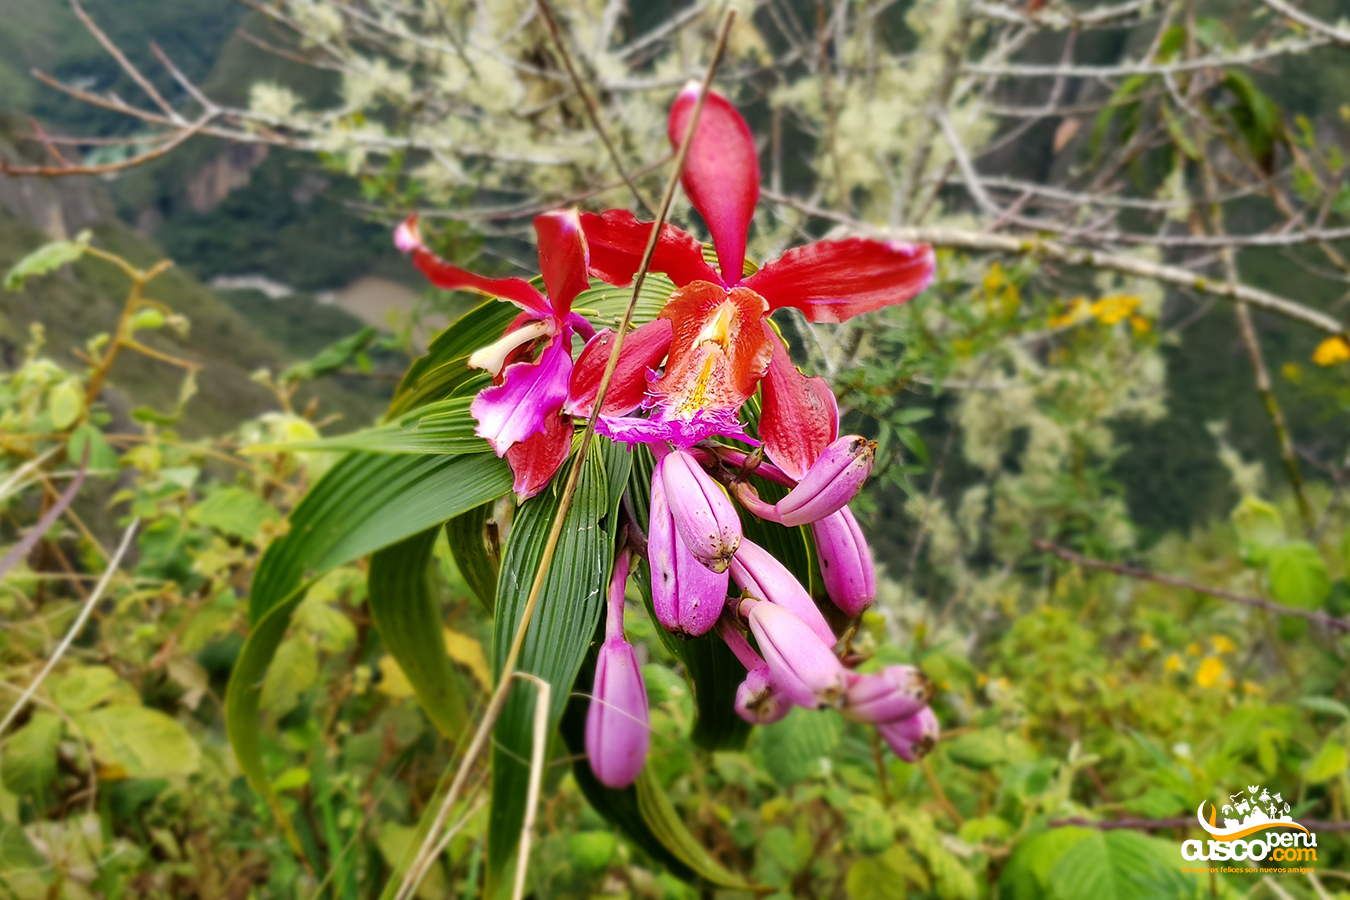 Orquídea en Machu Picchu. Fuente: CuscoPeru.com